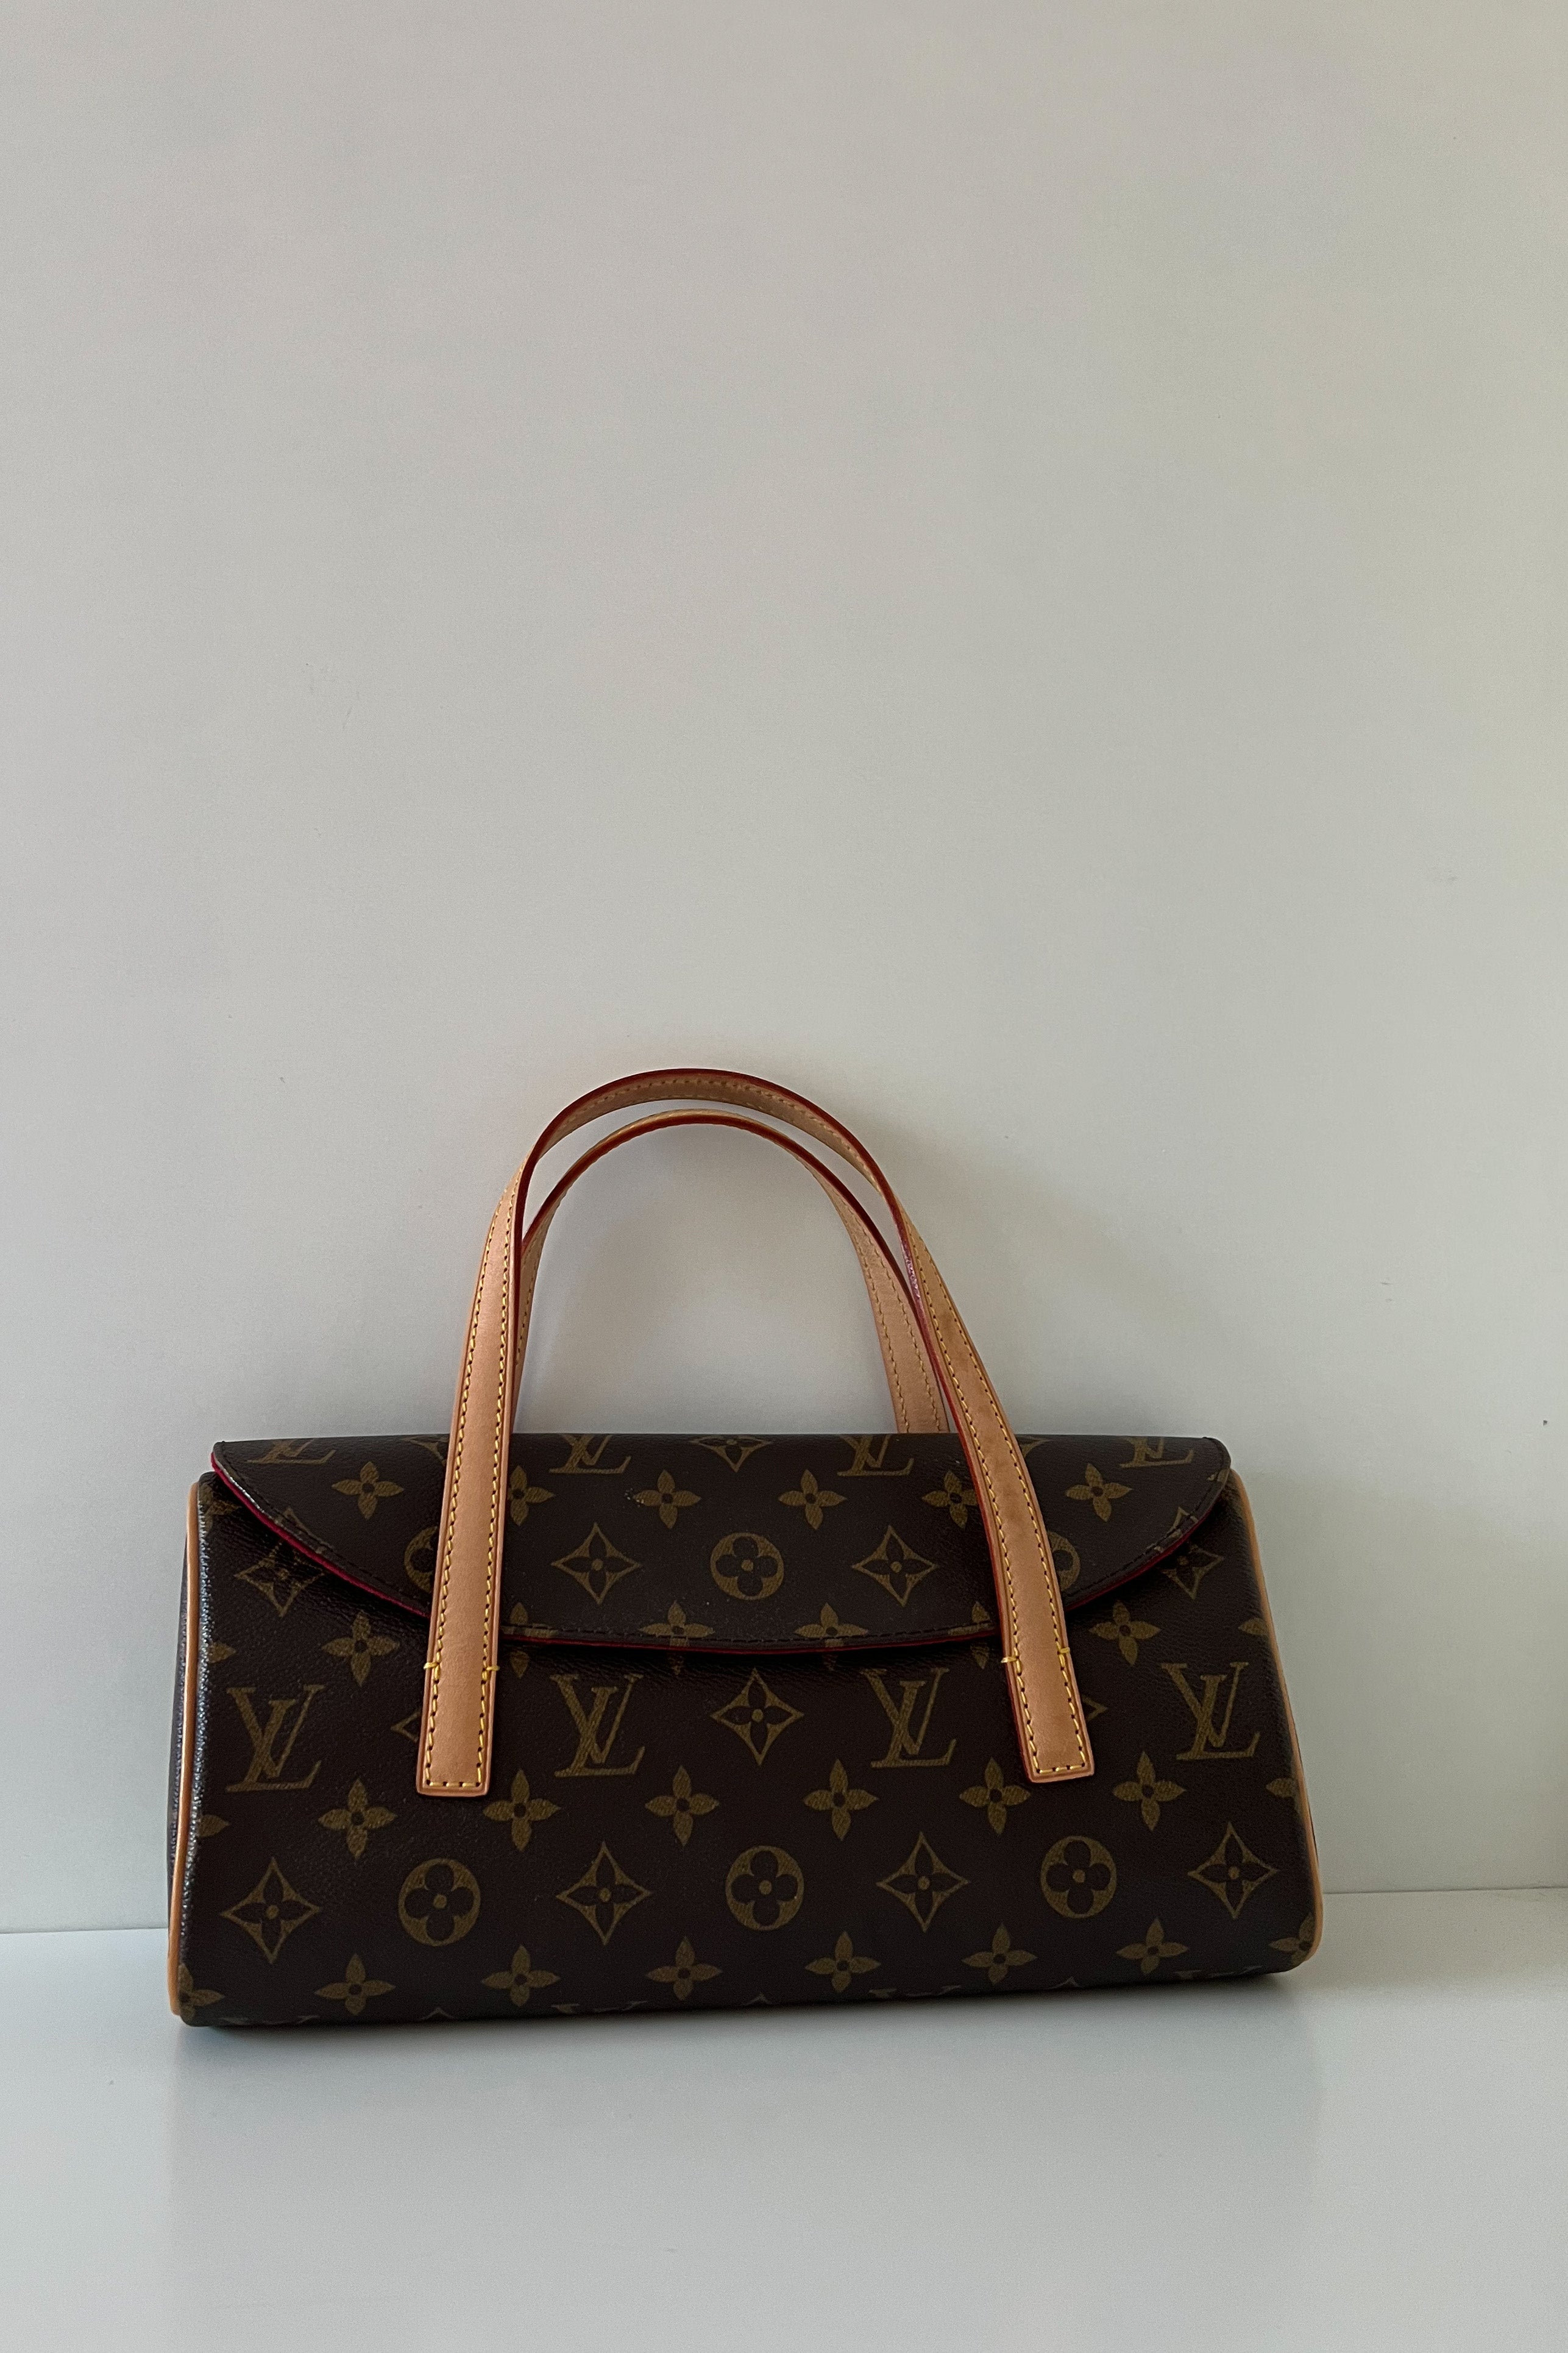 Louis Vuitton Sonatine - Good or Bag